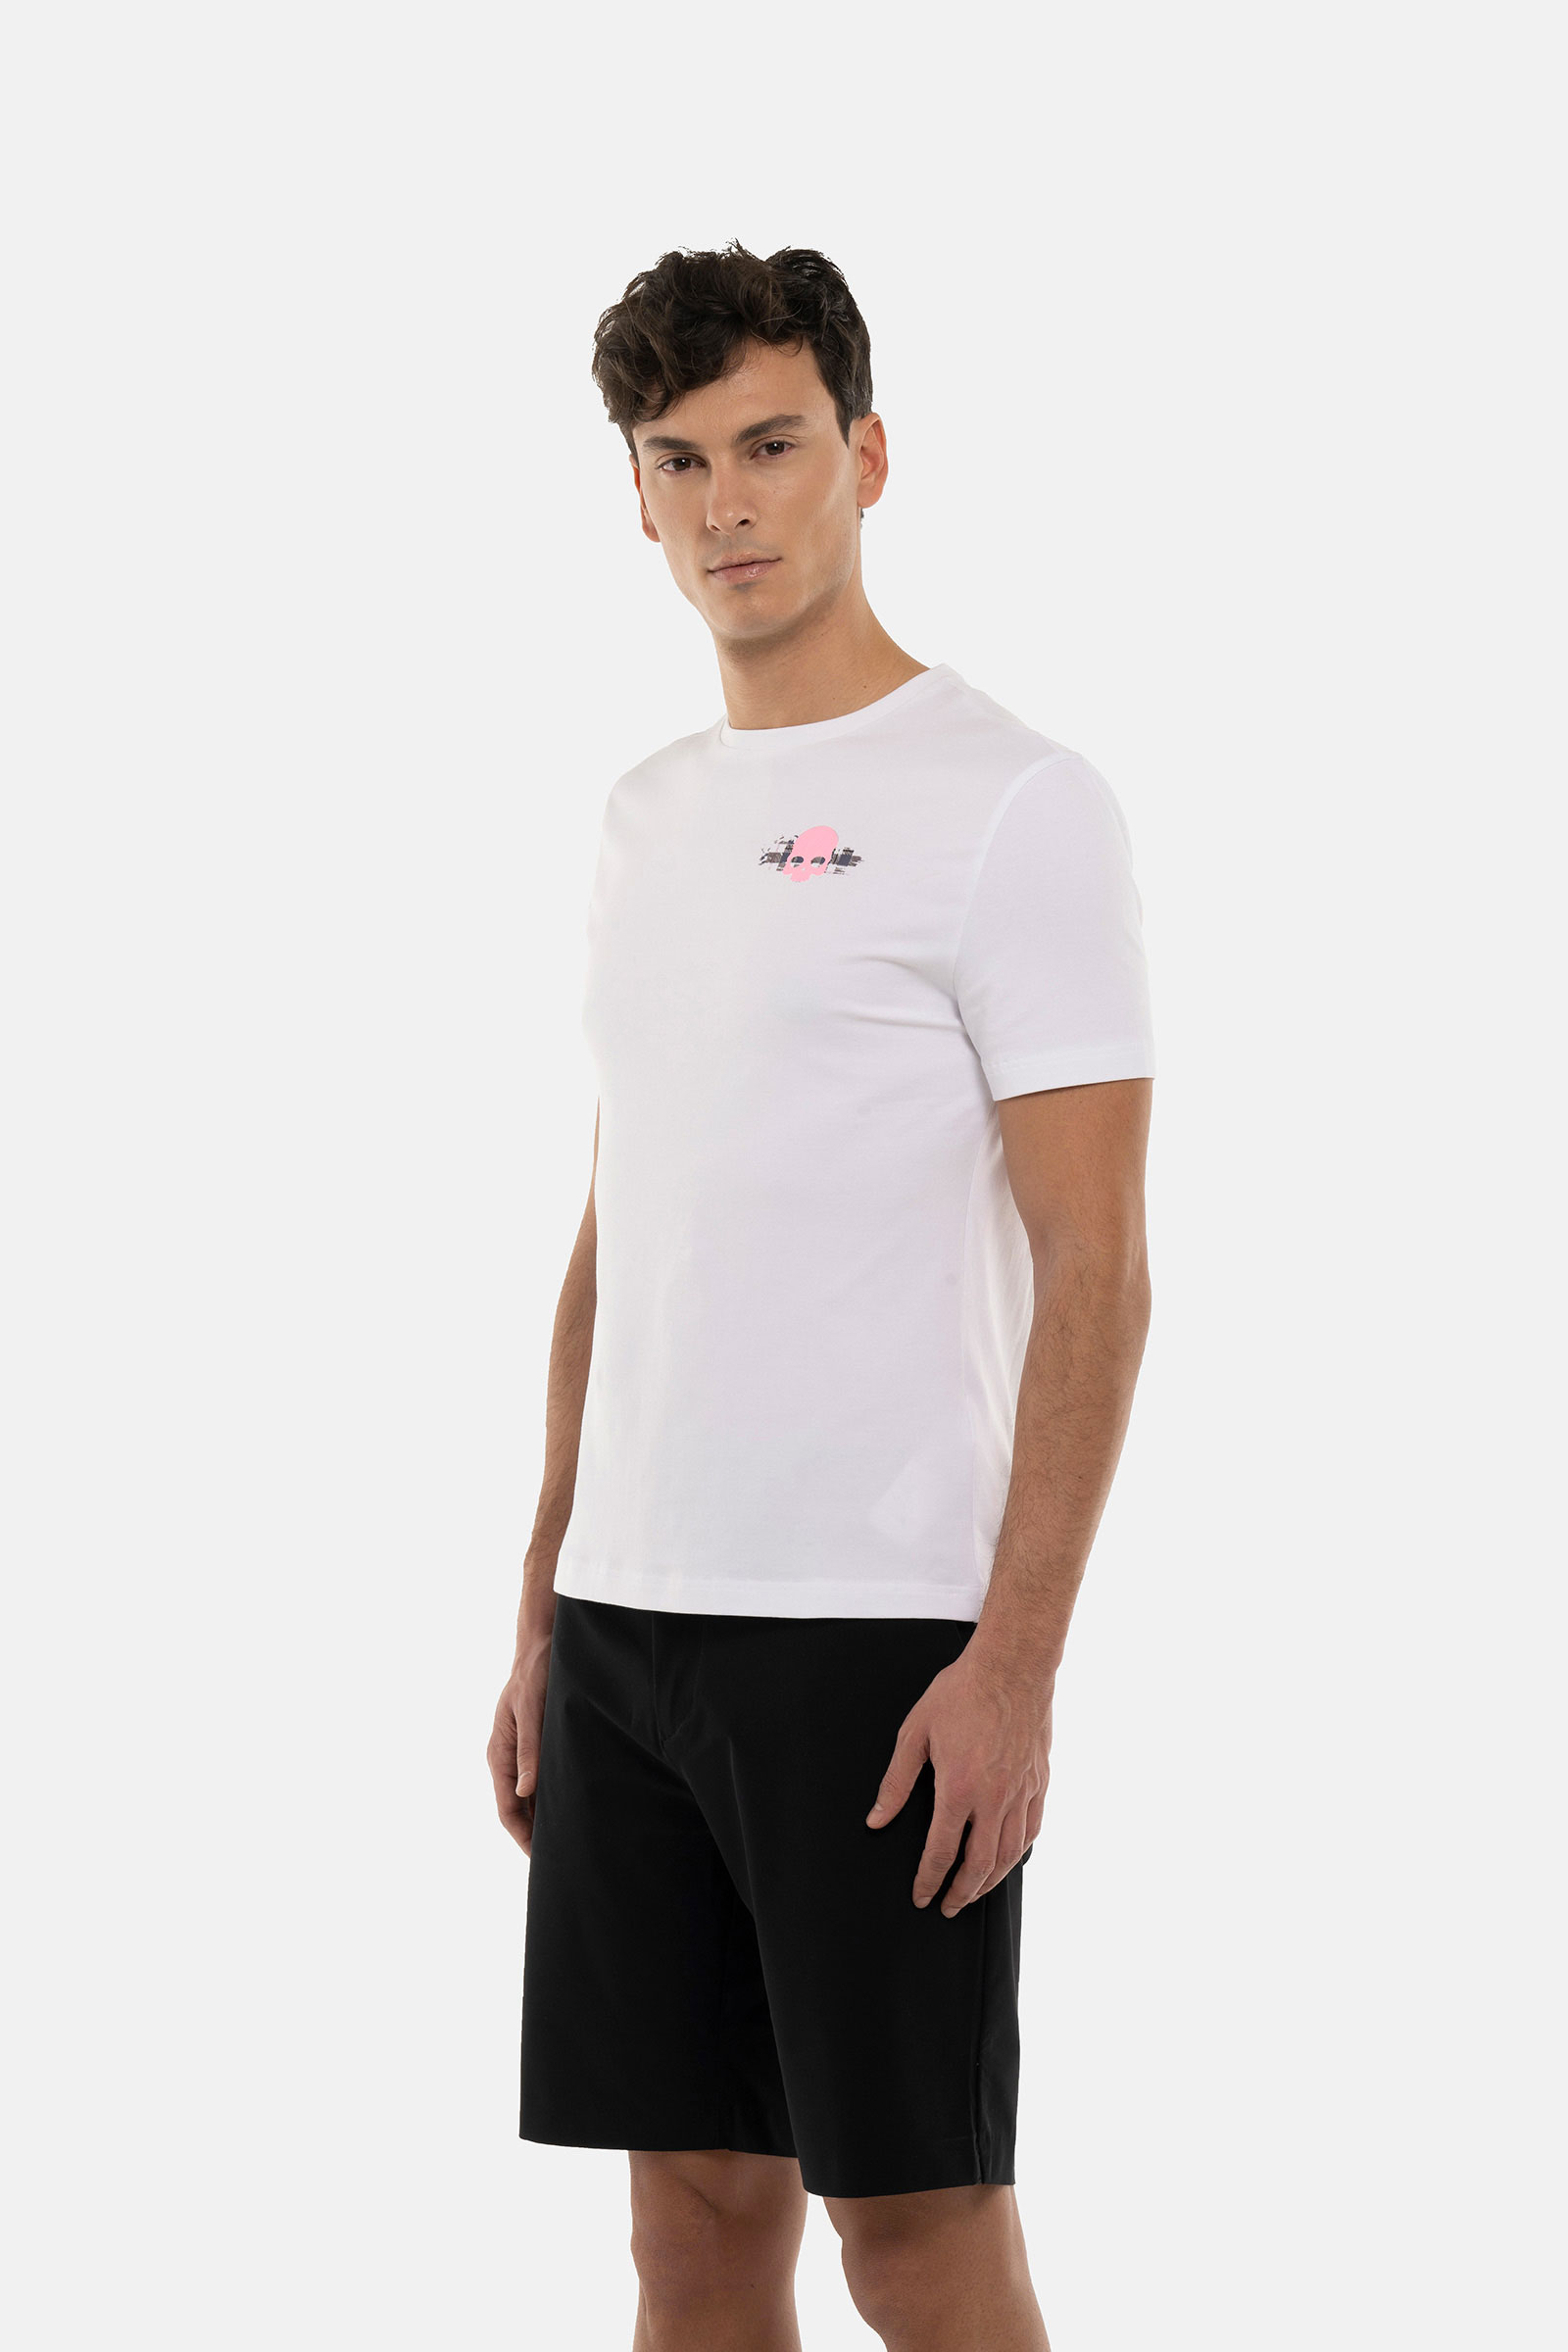 T-SHIRT TESCHIO TARTAN - WHITE - Abbigliamento sportivo | Hydrogen